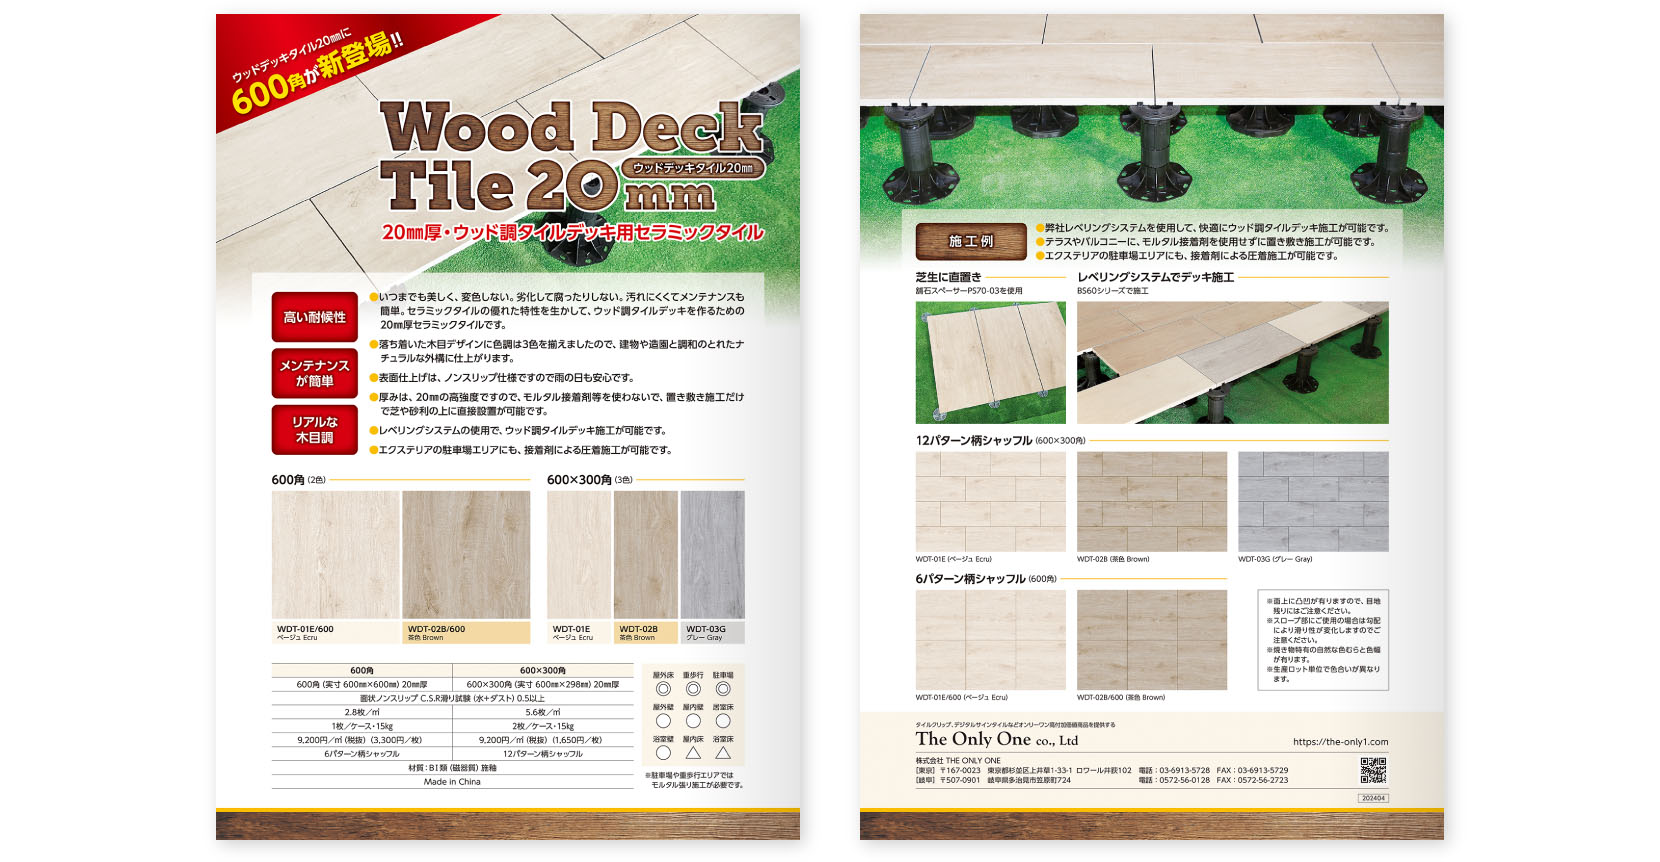 20㎜厚・ウッド調タイルデッキ用セラミックタイル　Wood Deck Tile 20mm　カタログ